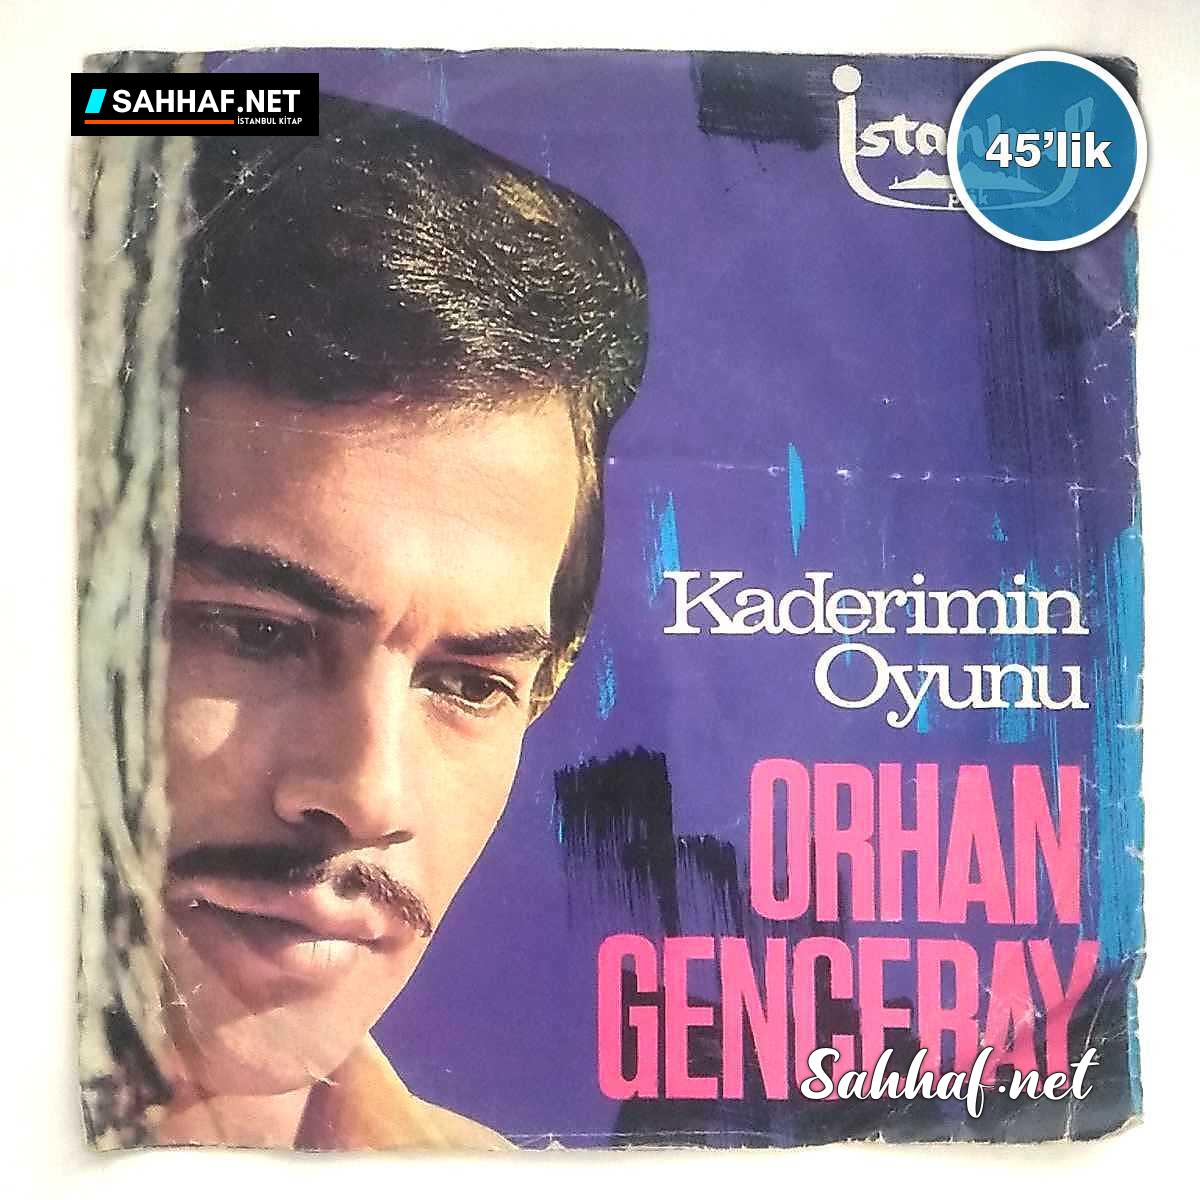 ORHAN GENCEBAY – Kaderimin Oyunu – Efkar Bastı Gönlümü – 45lik Plak Sahhaf.Net Film Müzik